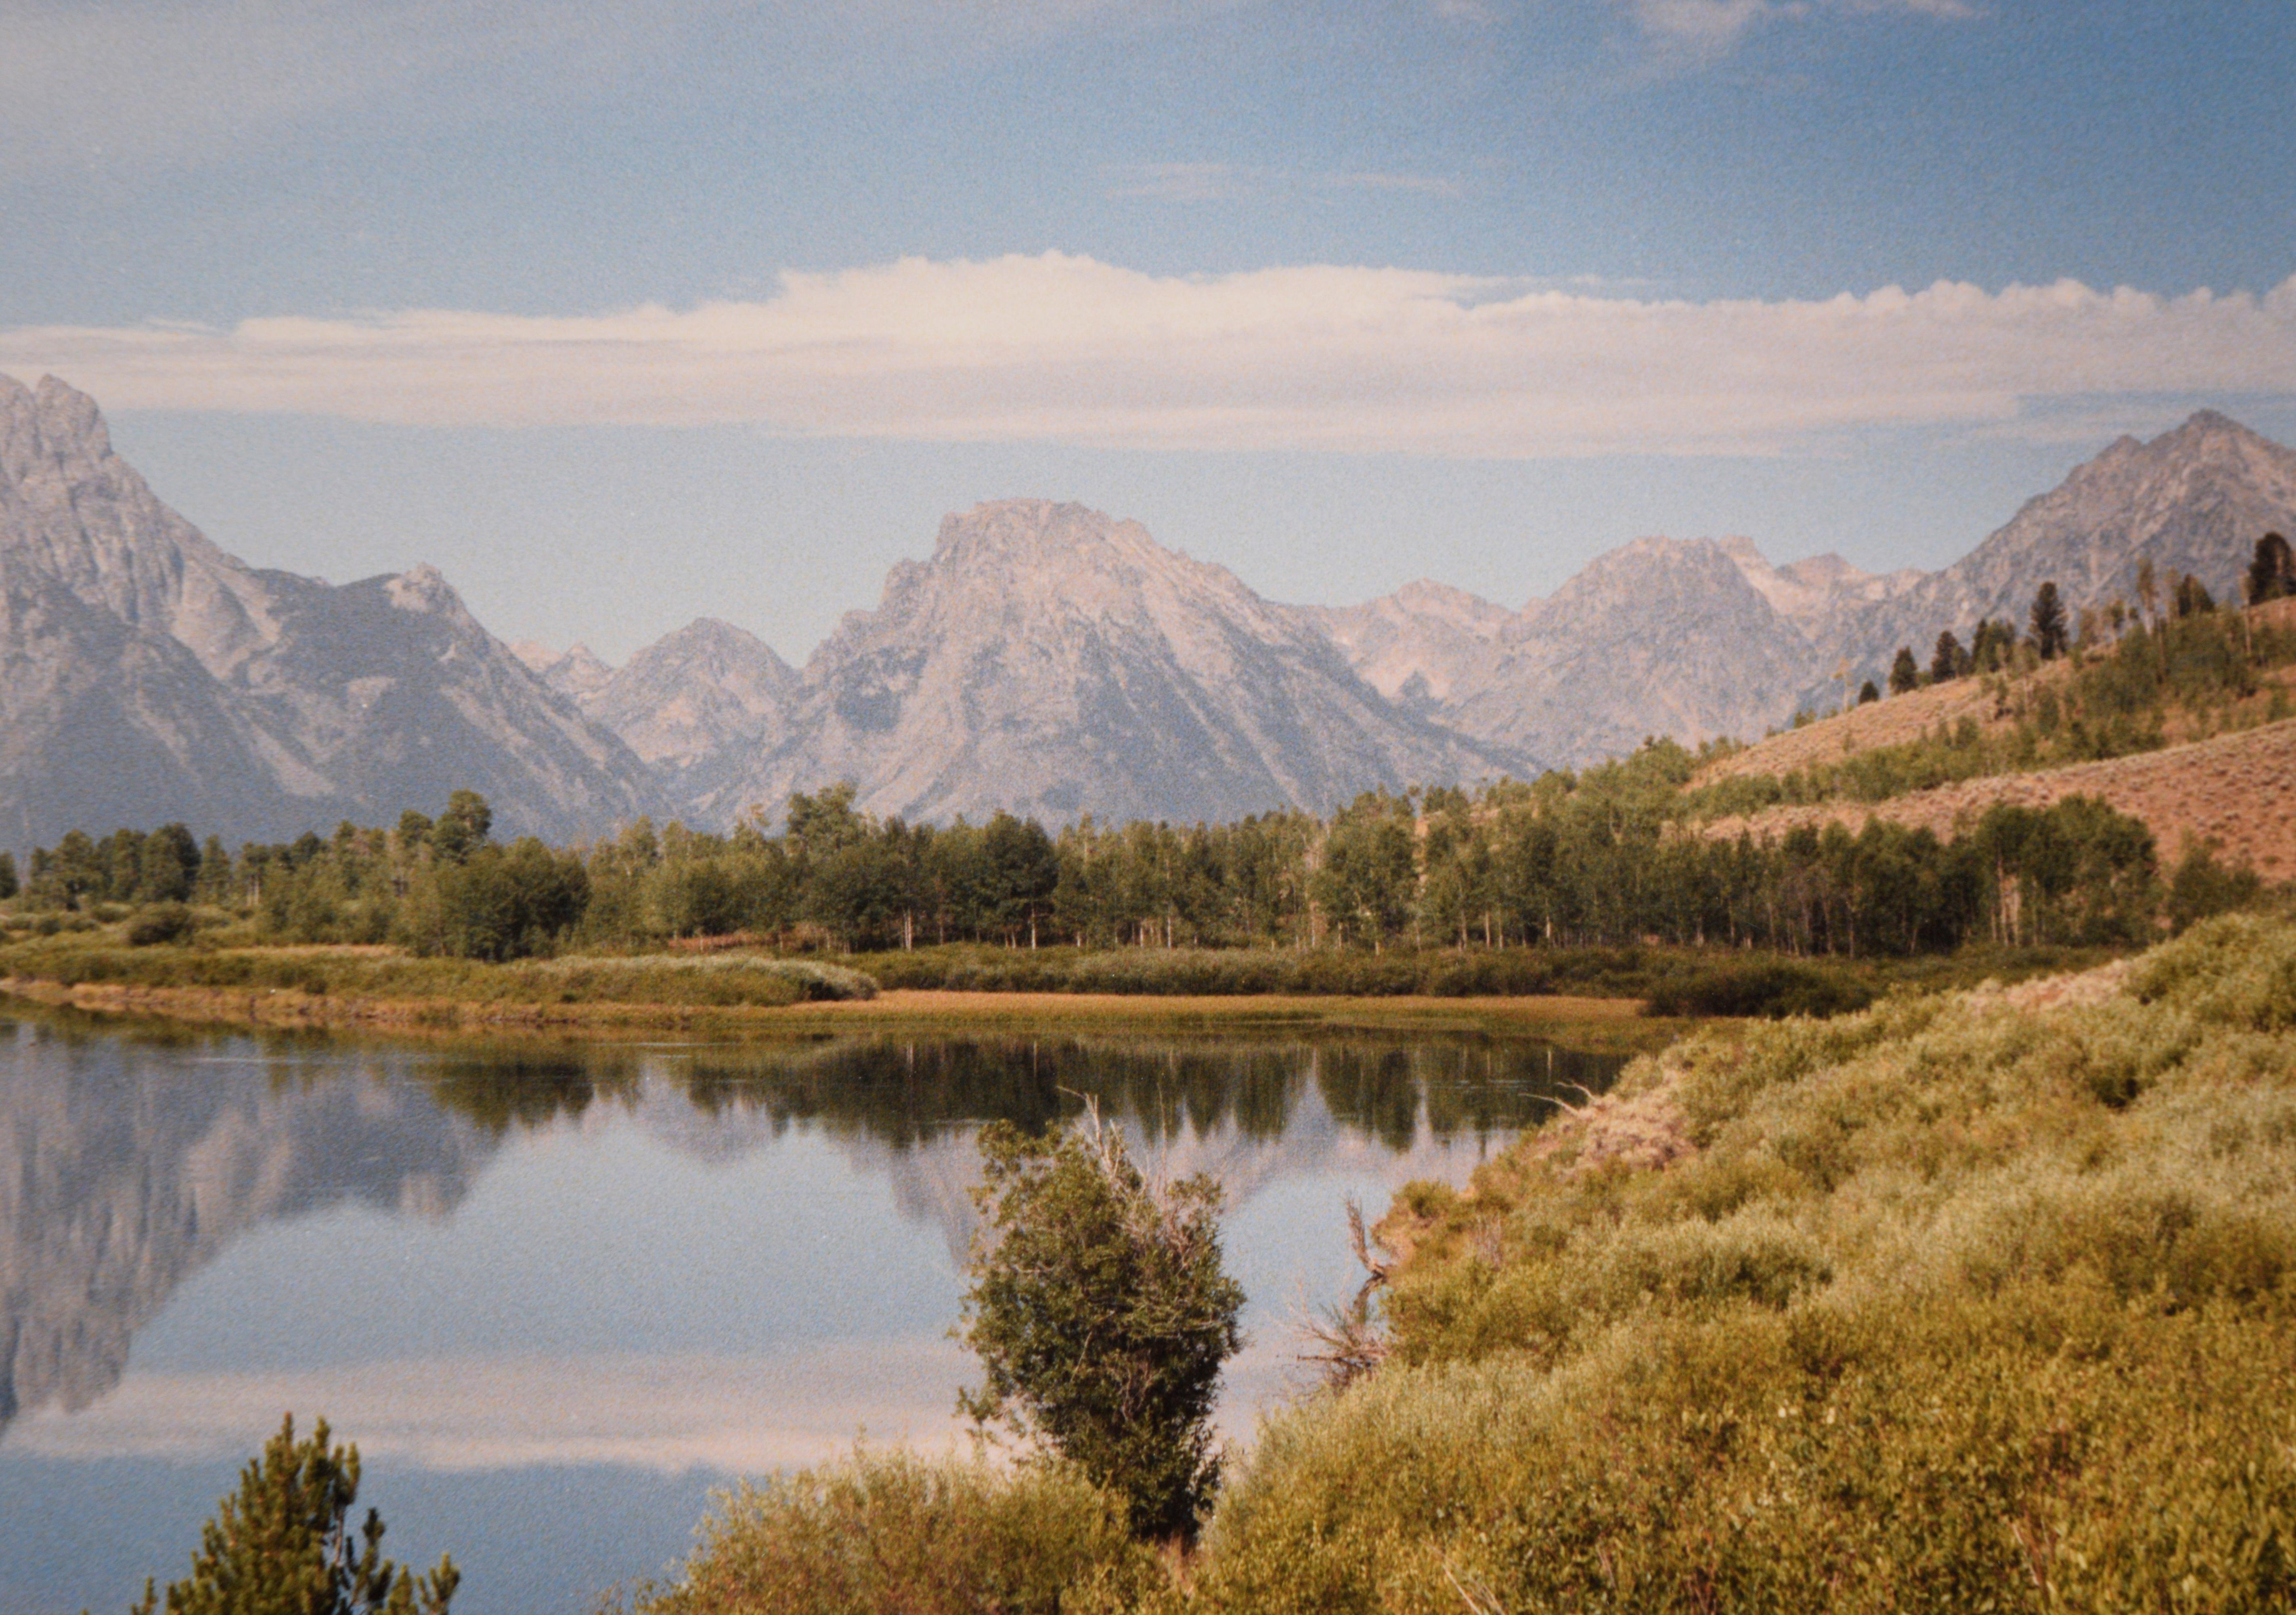 Grand Teton National Park - Photographie originale de 1988

Photographie couleur originale de 1988 du parc national de Grand Teton dans le Wyoming, dans le style de Steve Mattheis,
. La photographie montre la chaîne de montagnes Teton, avec son